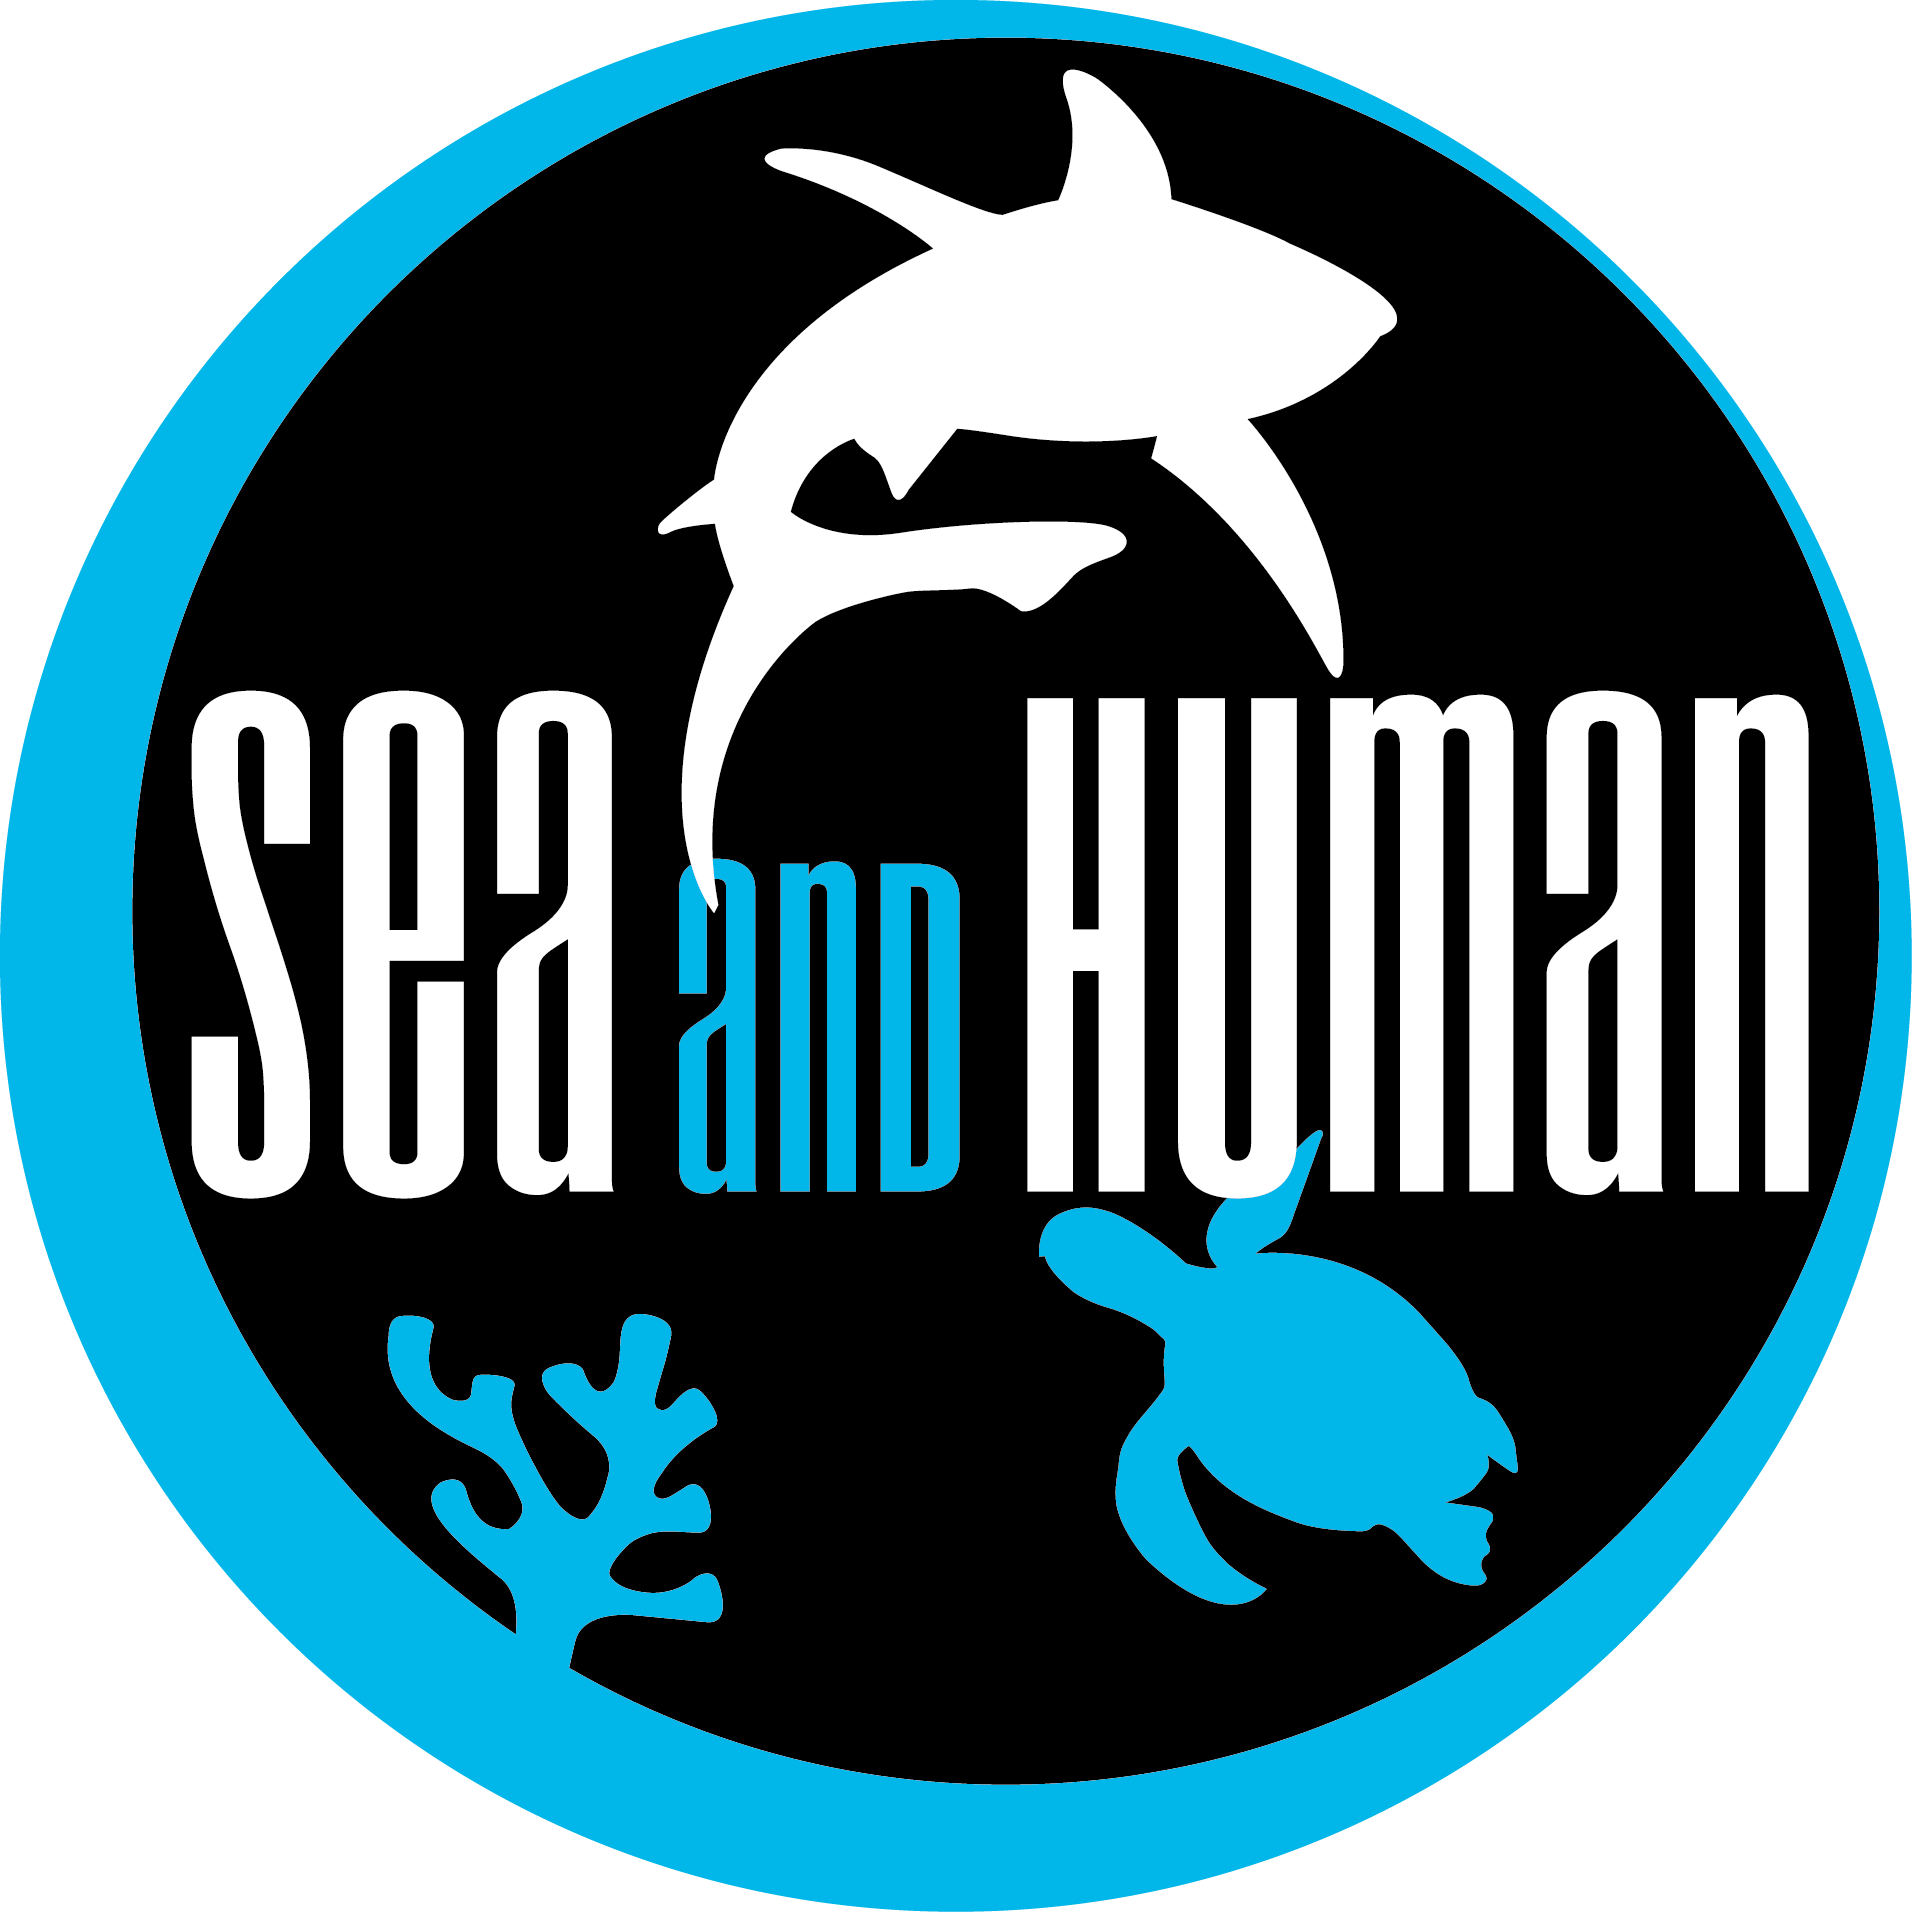 SEA and HUMAN